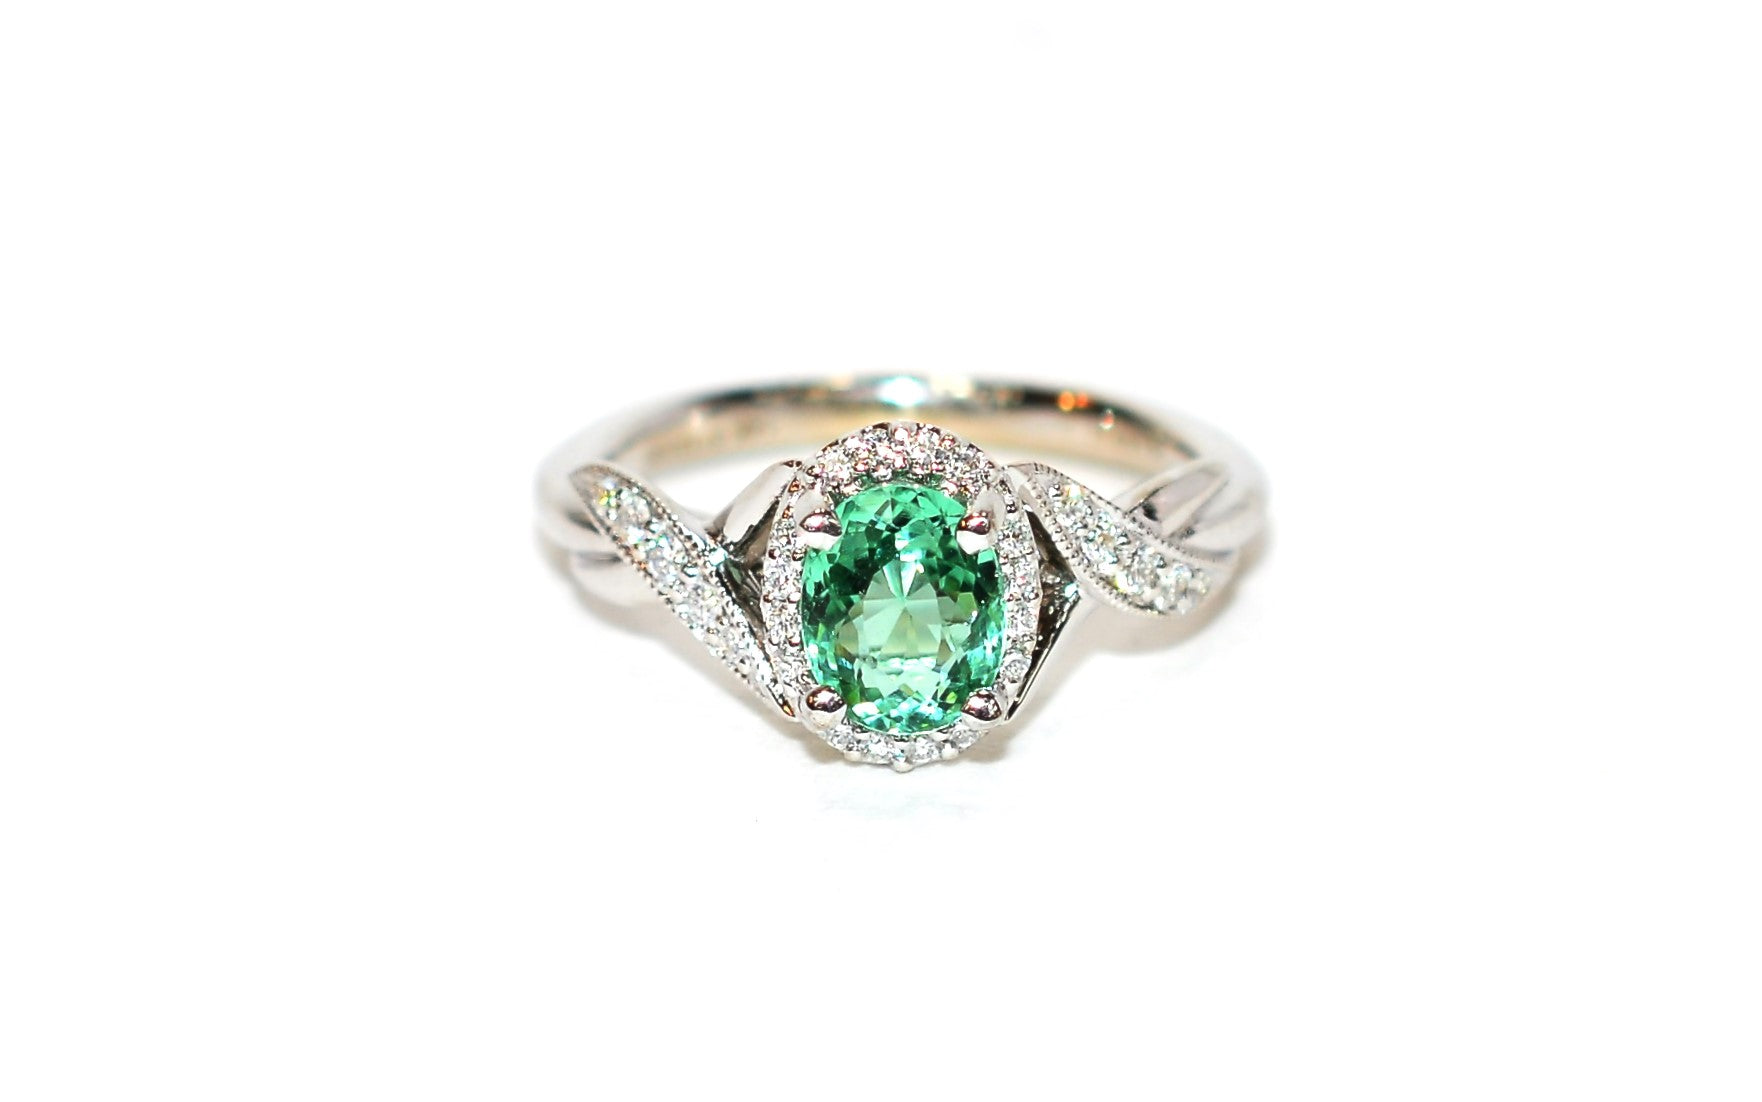 Gabriel Co. Certified Natural Brazilian Paraiba Tourmaline & Diamond Ring 14K White Gold 1.04tcw Engagement Ring Wedding Ring Cocktail Ring